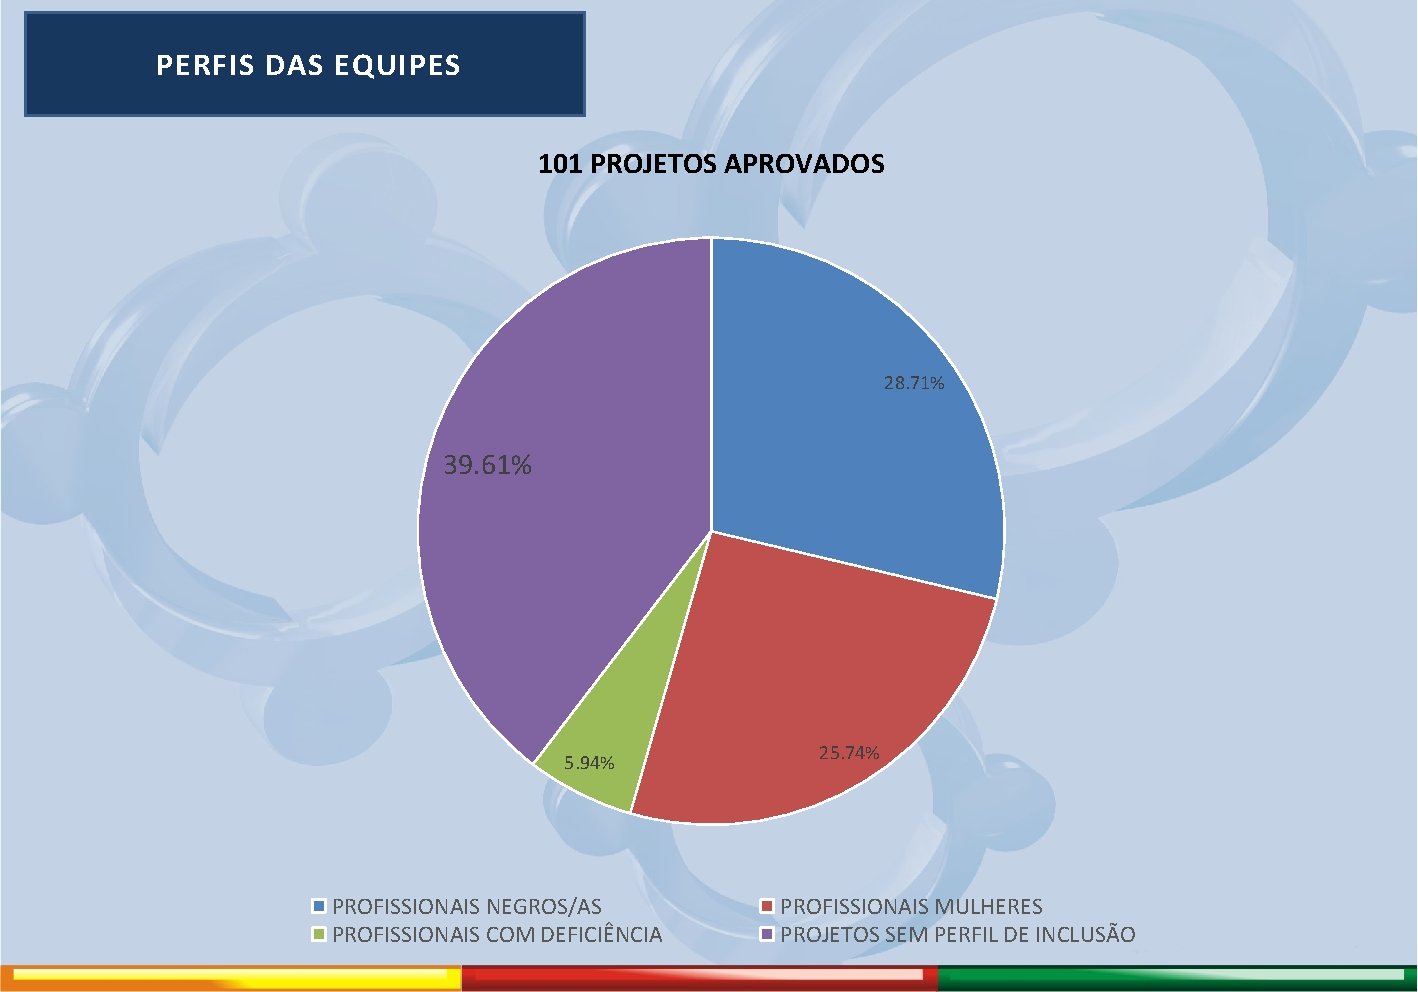  PERFIS DAS EQUIPES 101 PROJETOS APROVADOS 28. 71% 39. 61% 5. 94% PROFISSIONAIS